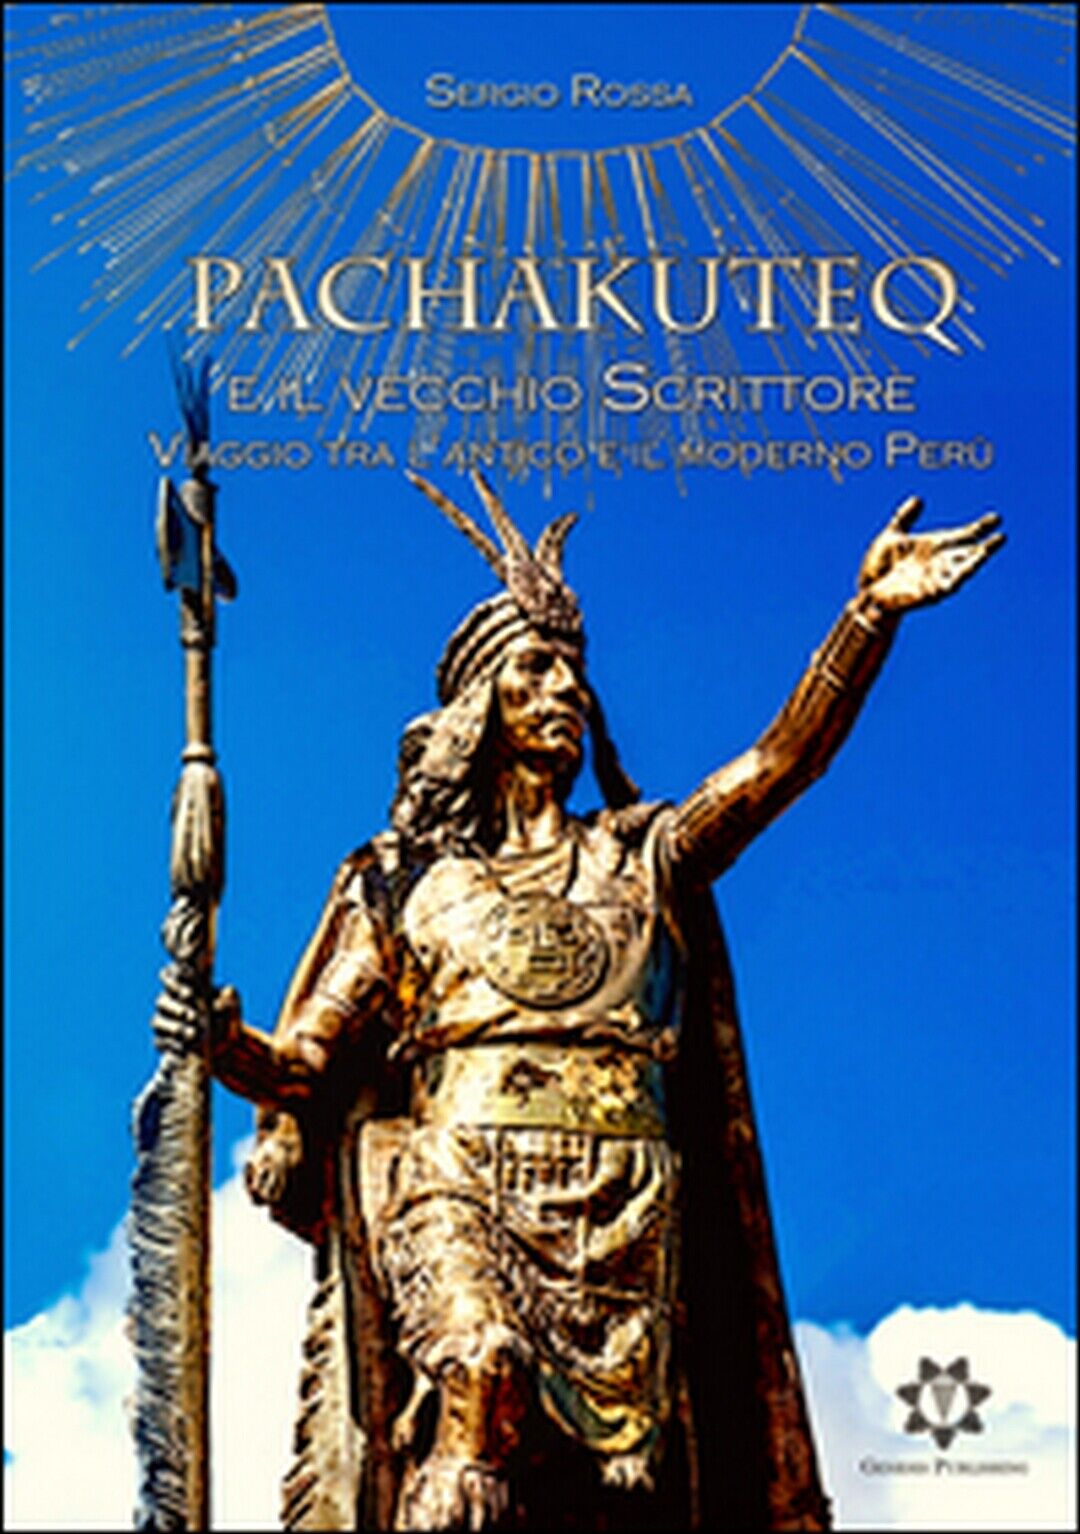 Pachakuteq e il vecchio scrittore. Viaggio tra L'antico e il moderno Per? libro usato